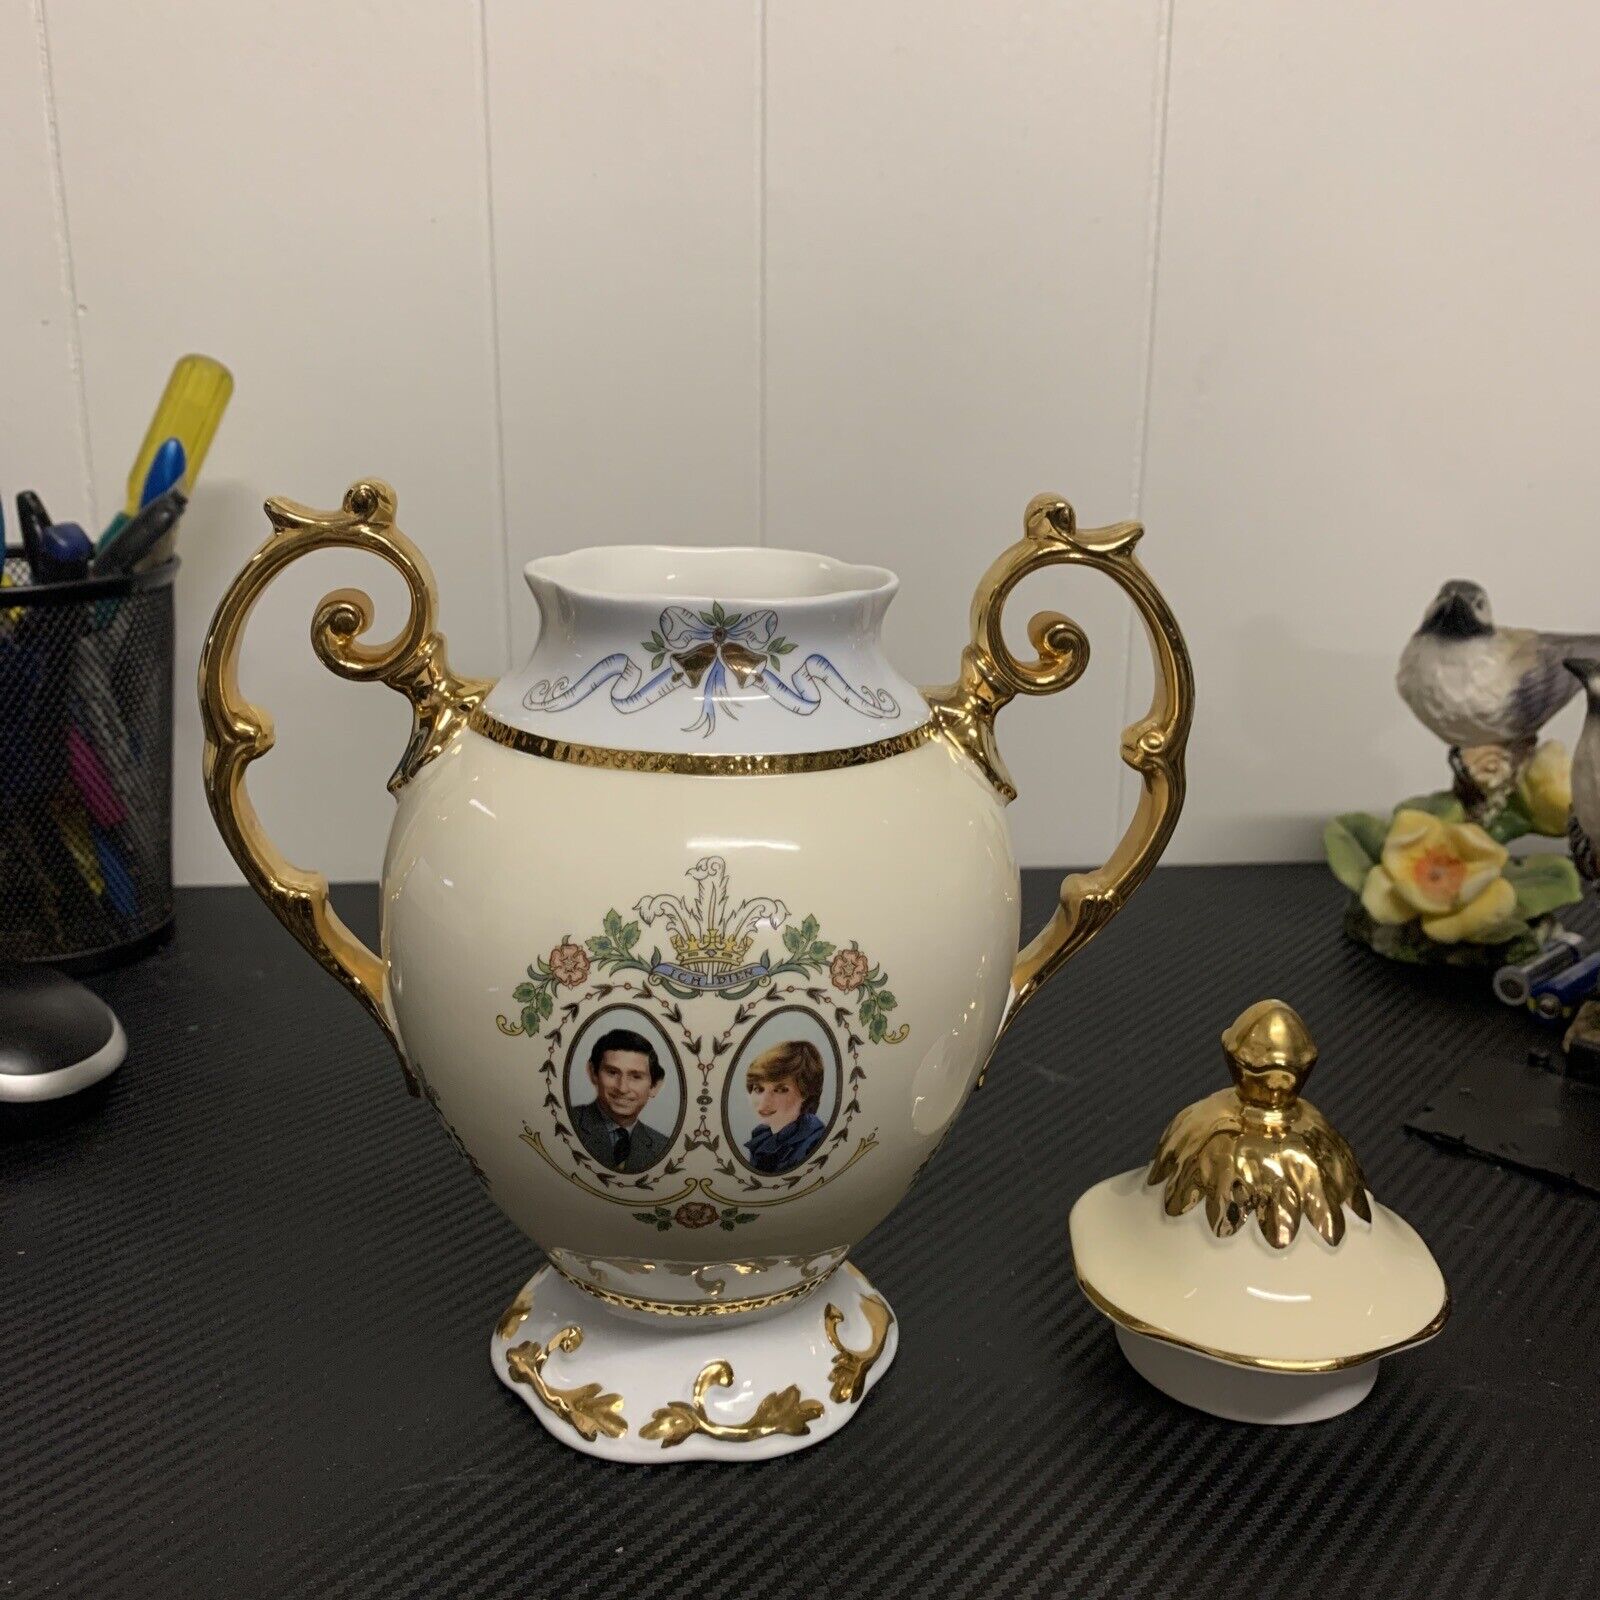 Princess Diana Porcelain Vase Made For Stephen House By Elizabethan 1981